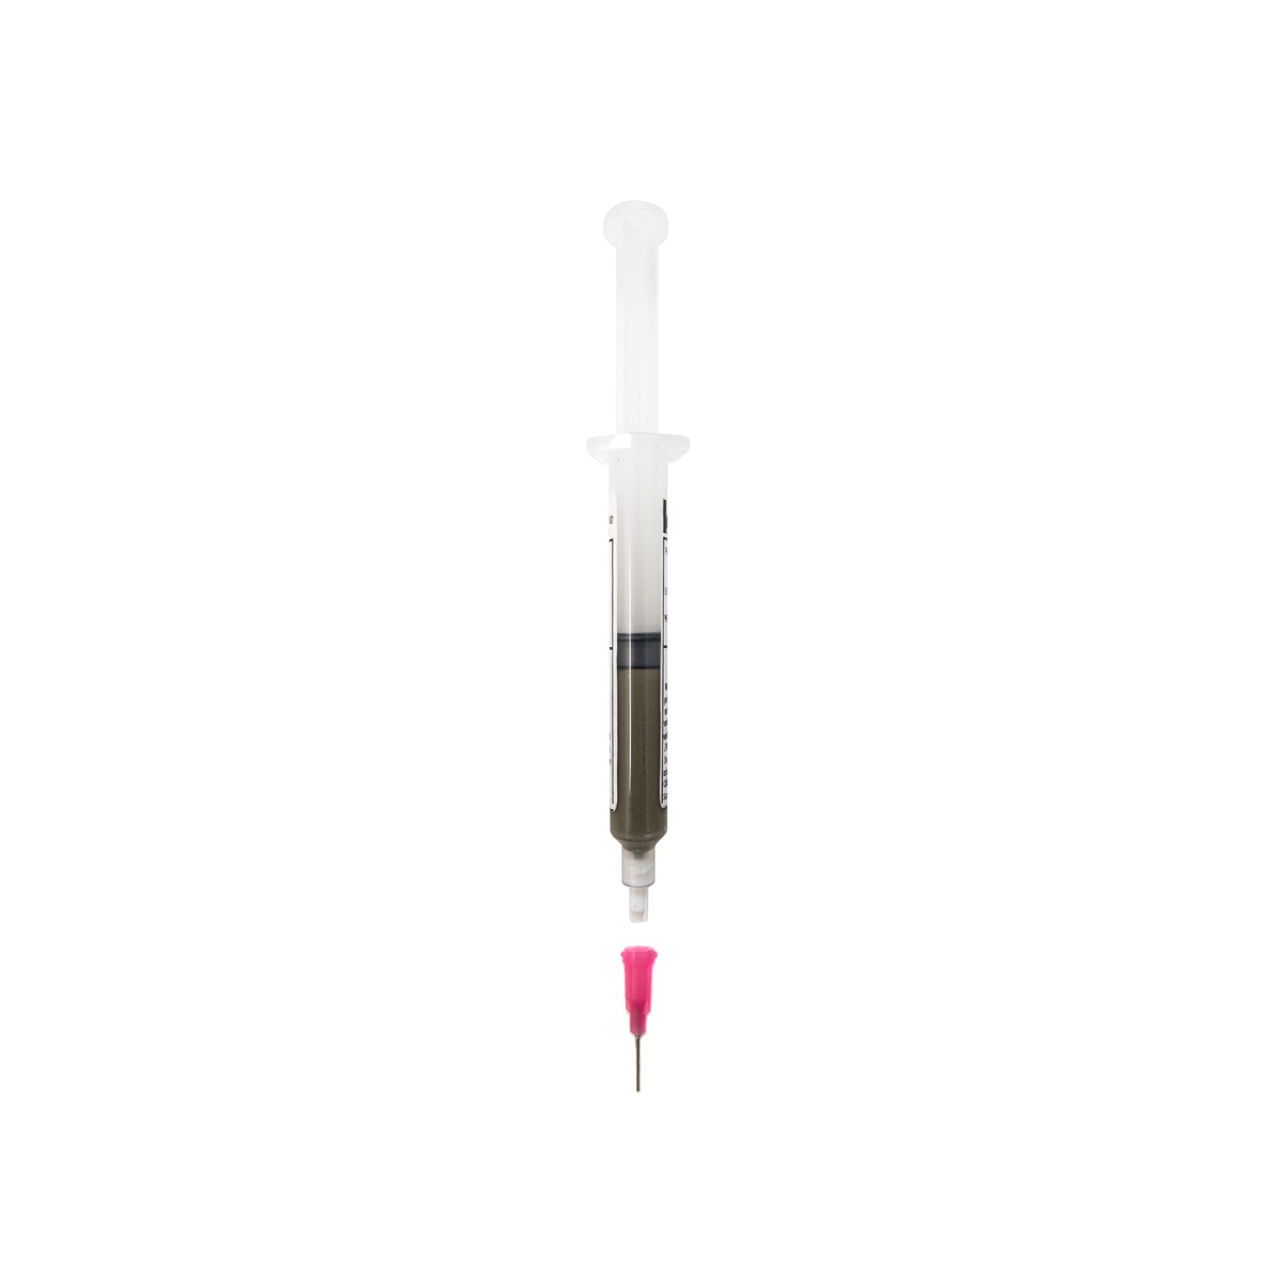 14k Gold Solder Paste Syringe